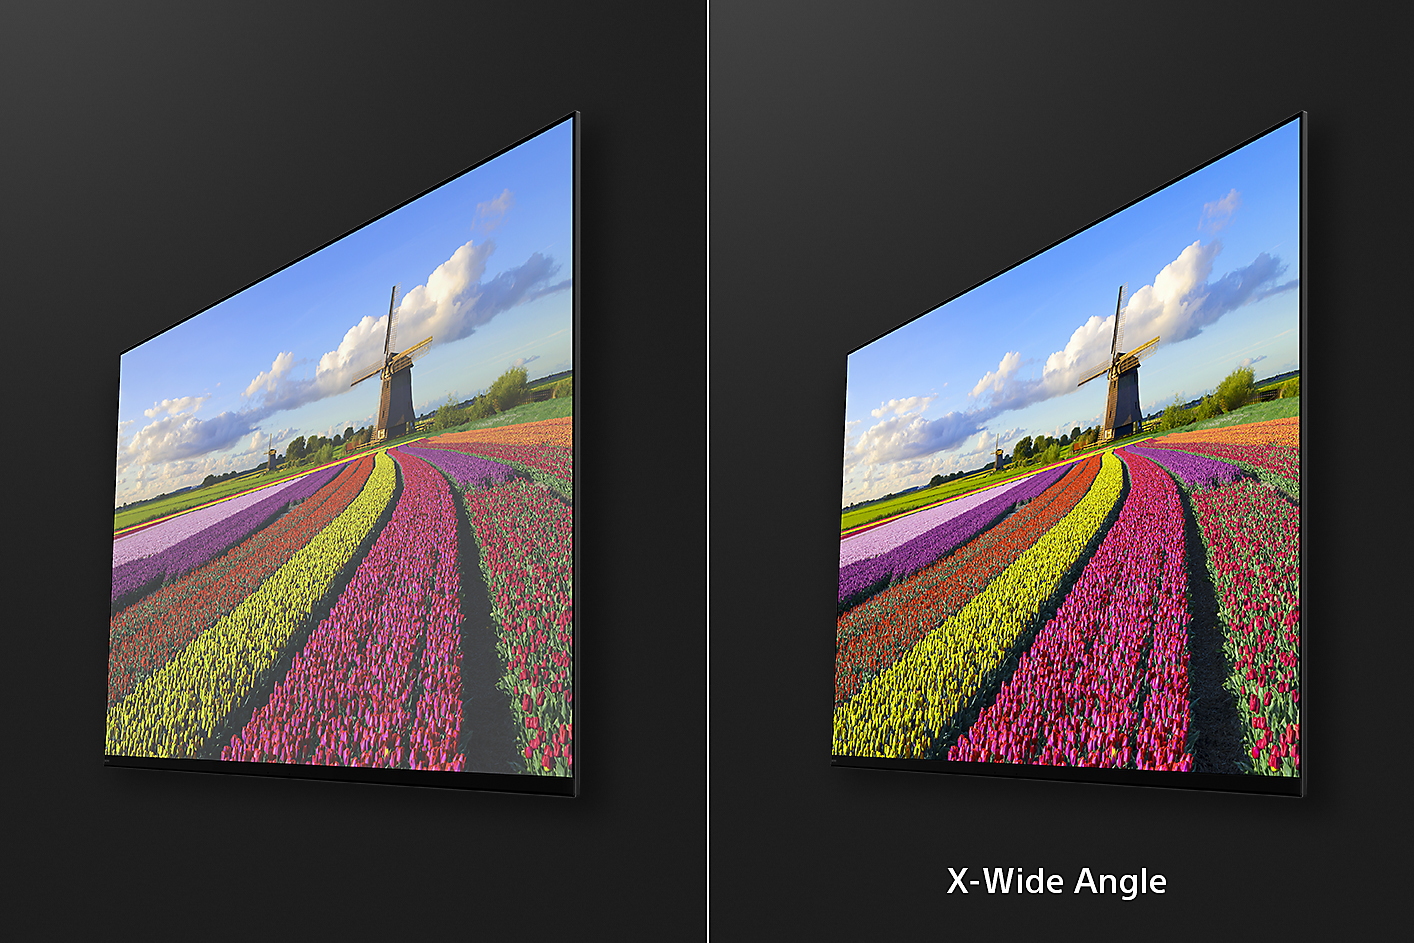 لقطتا شاشة بزاوية لزهور في حقل حيث تعرض الصورة على اليمين مزايا تقنية X-Wide Angle